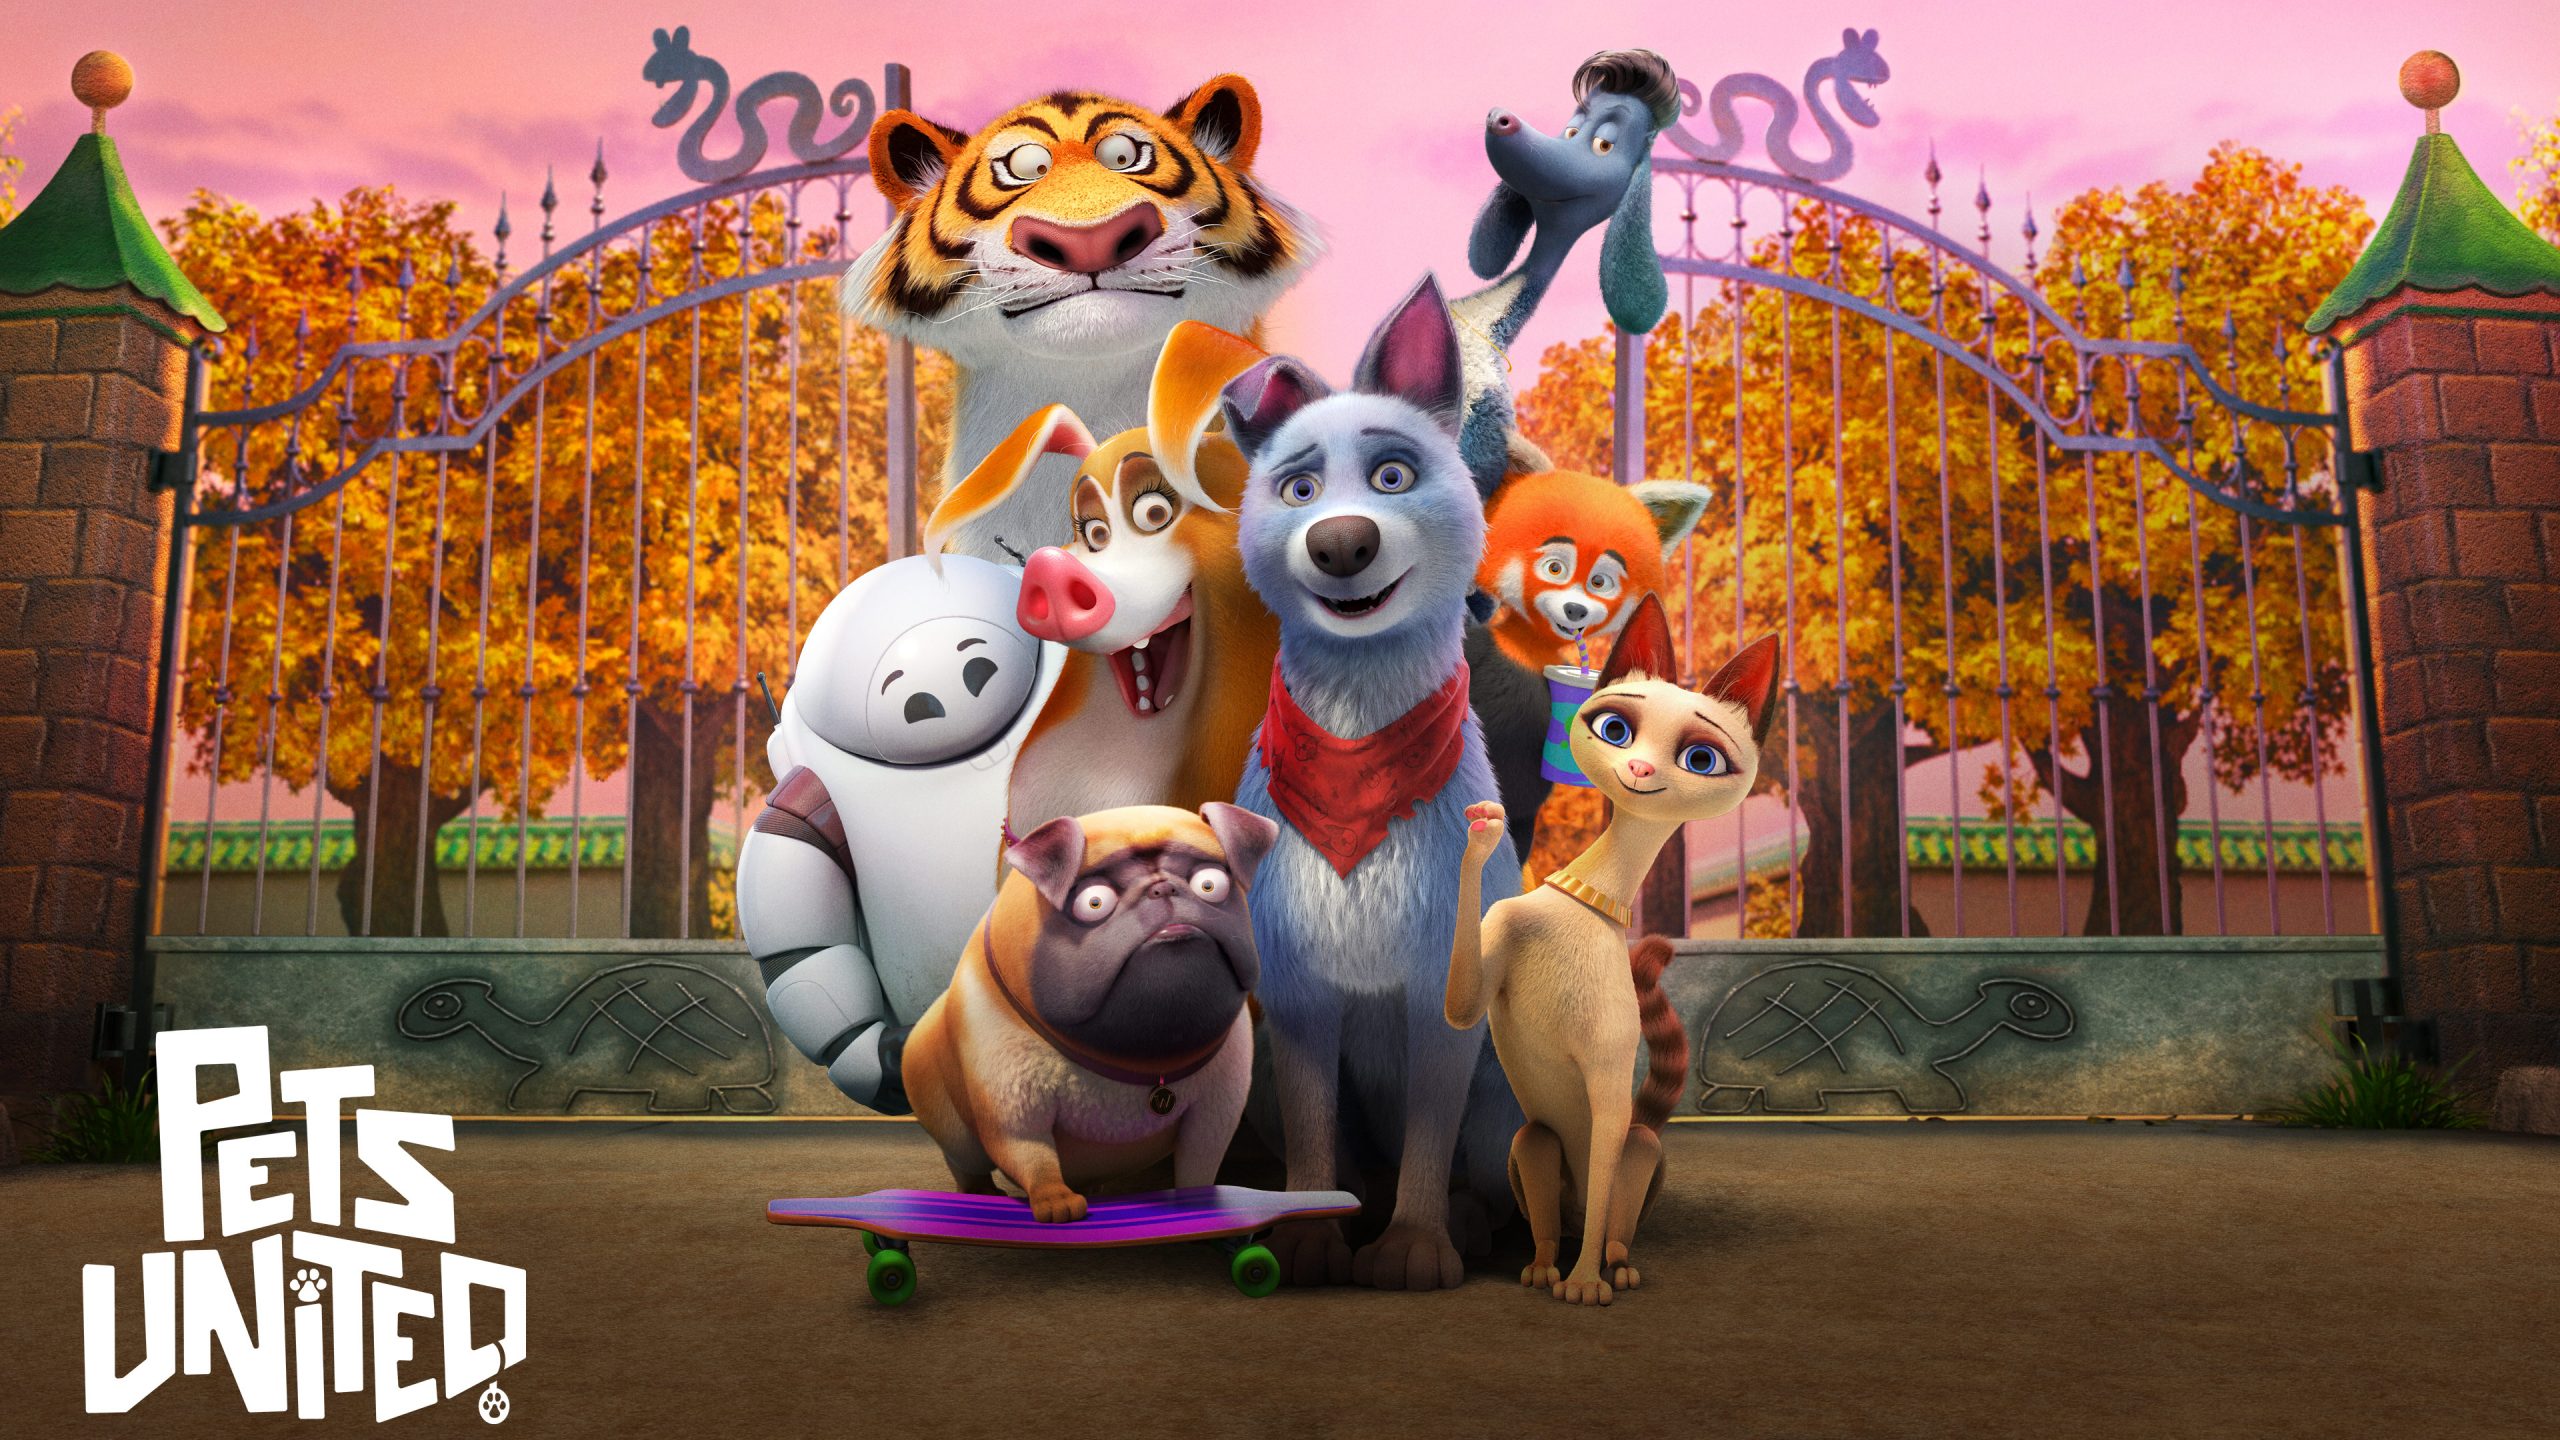 Pets United | Netflix Story Art Concept, Finishing & Illustration